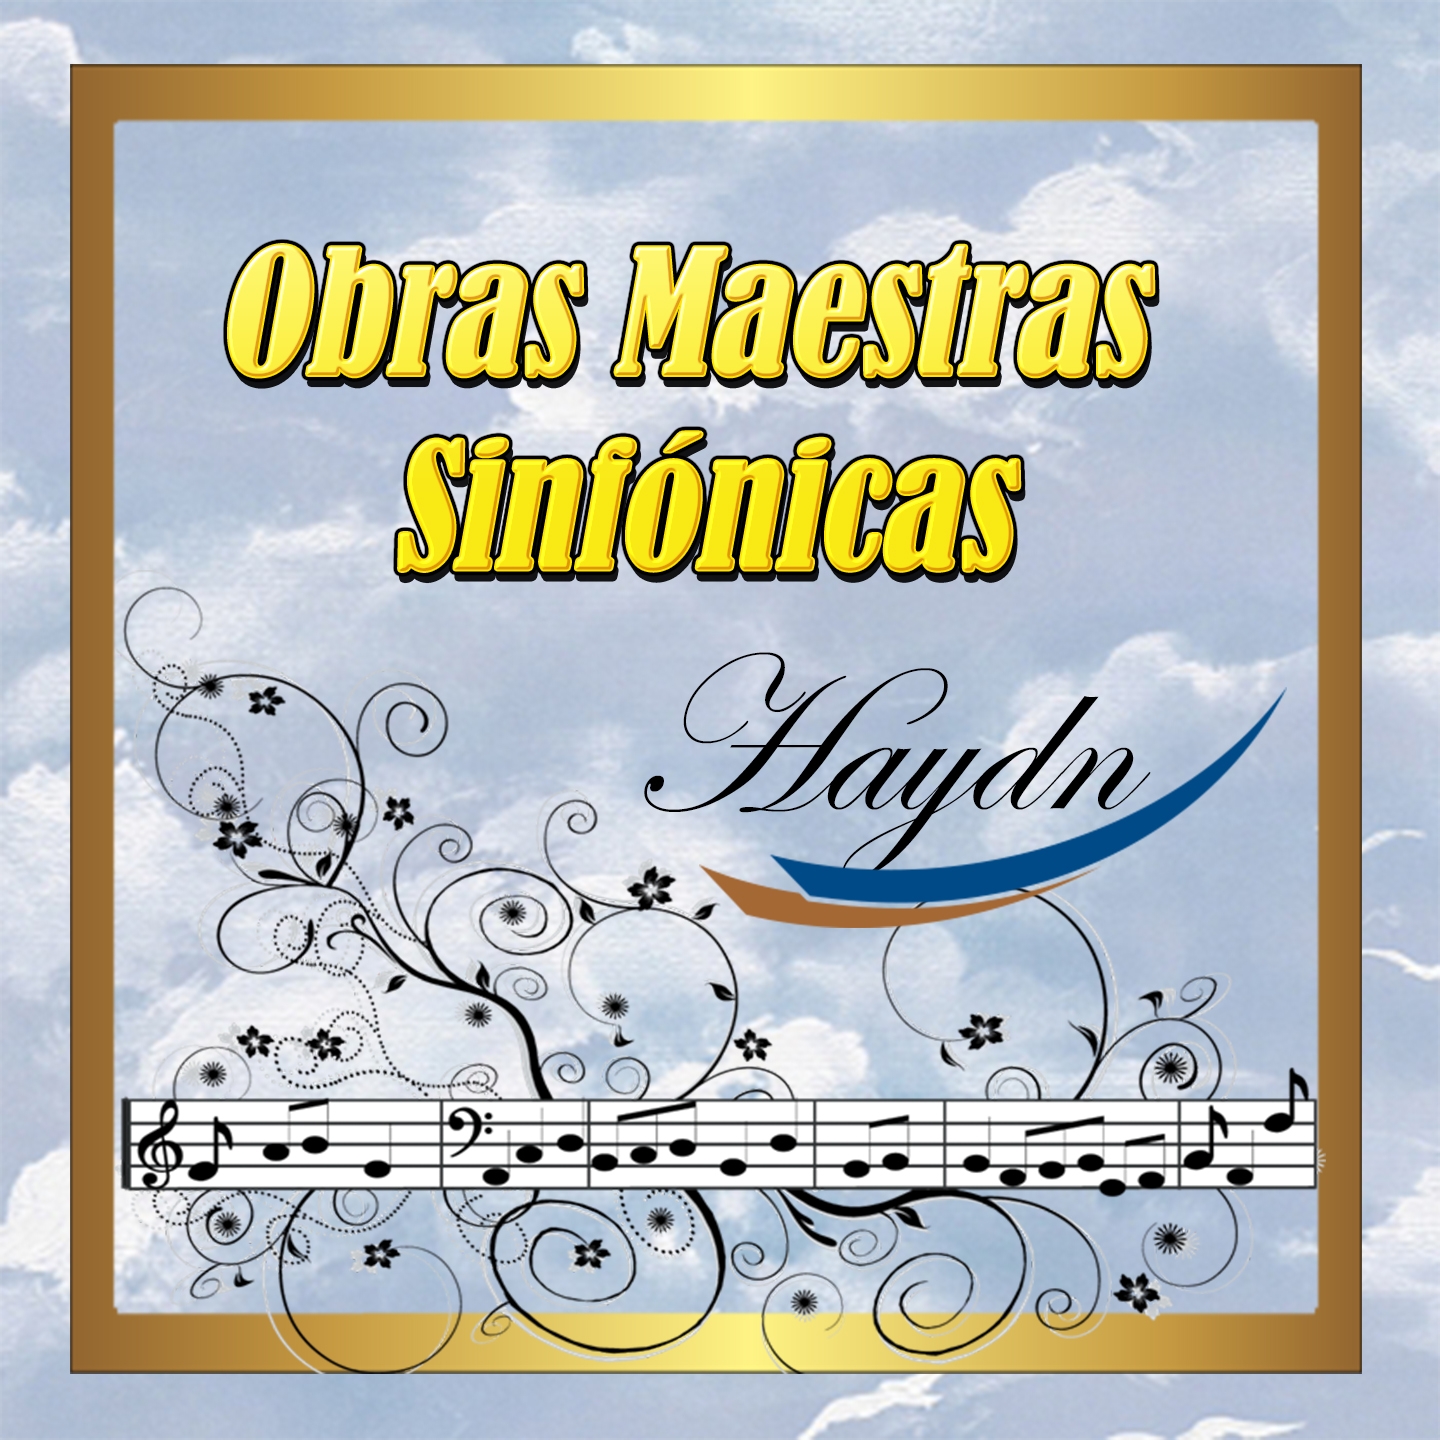 Obras Maestras Sinfo nicas, Haydn